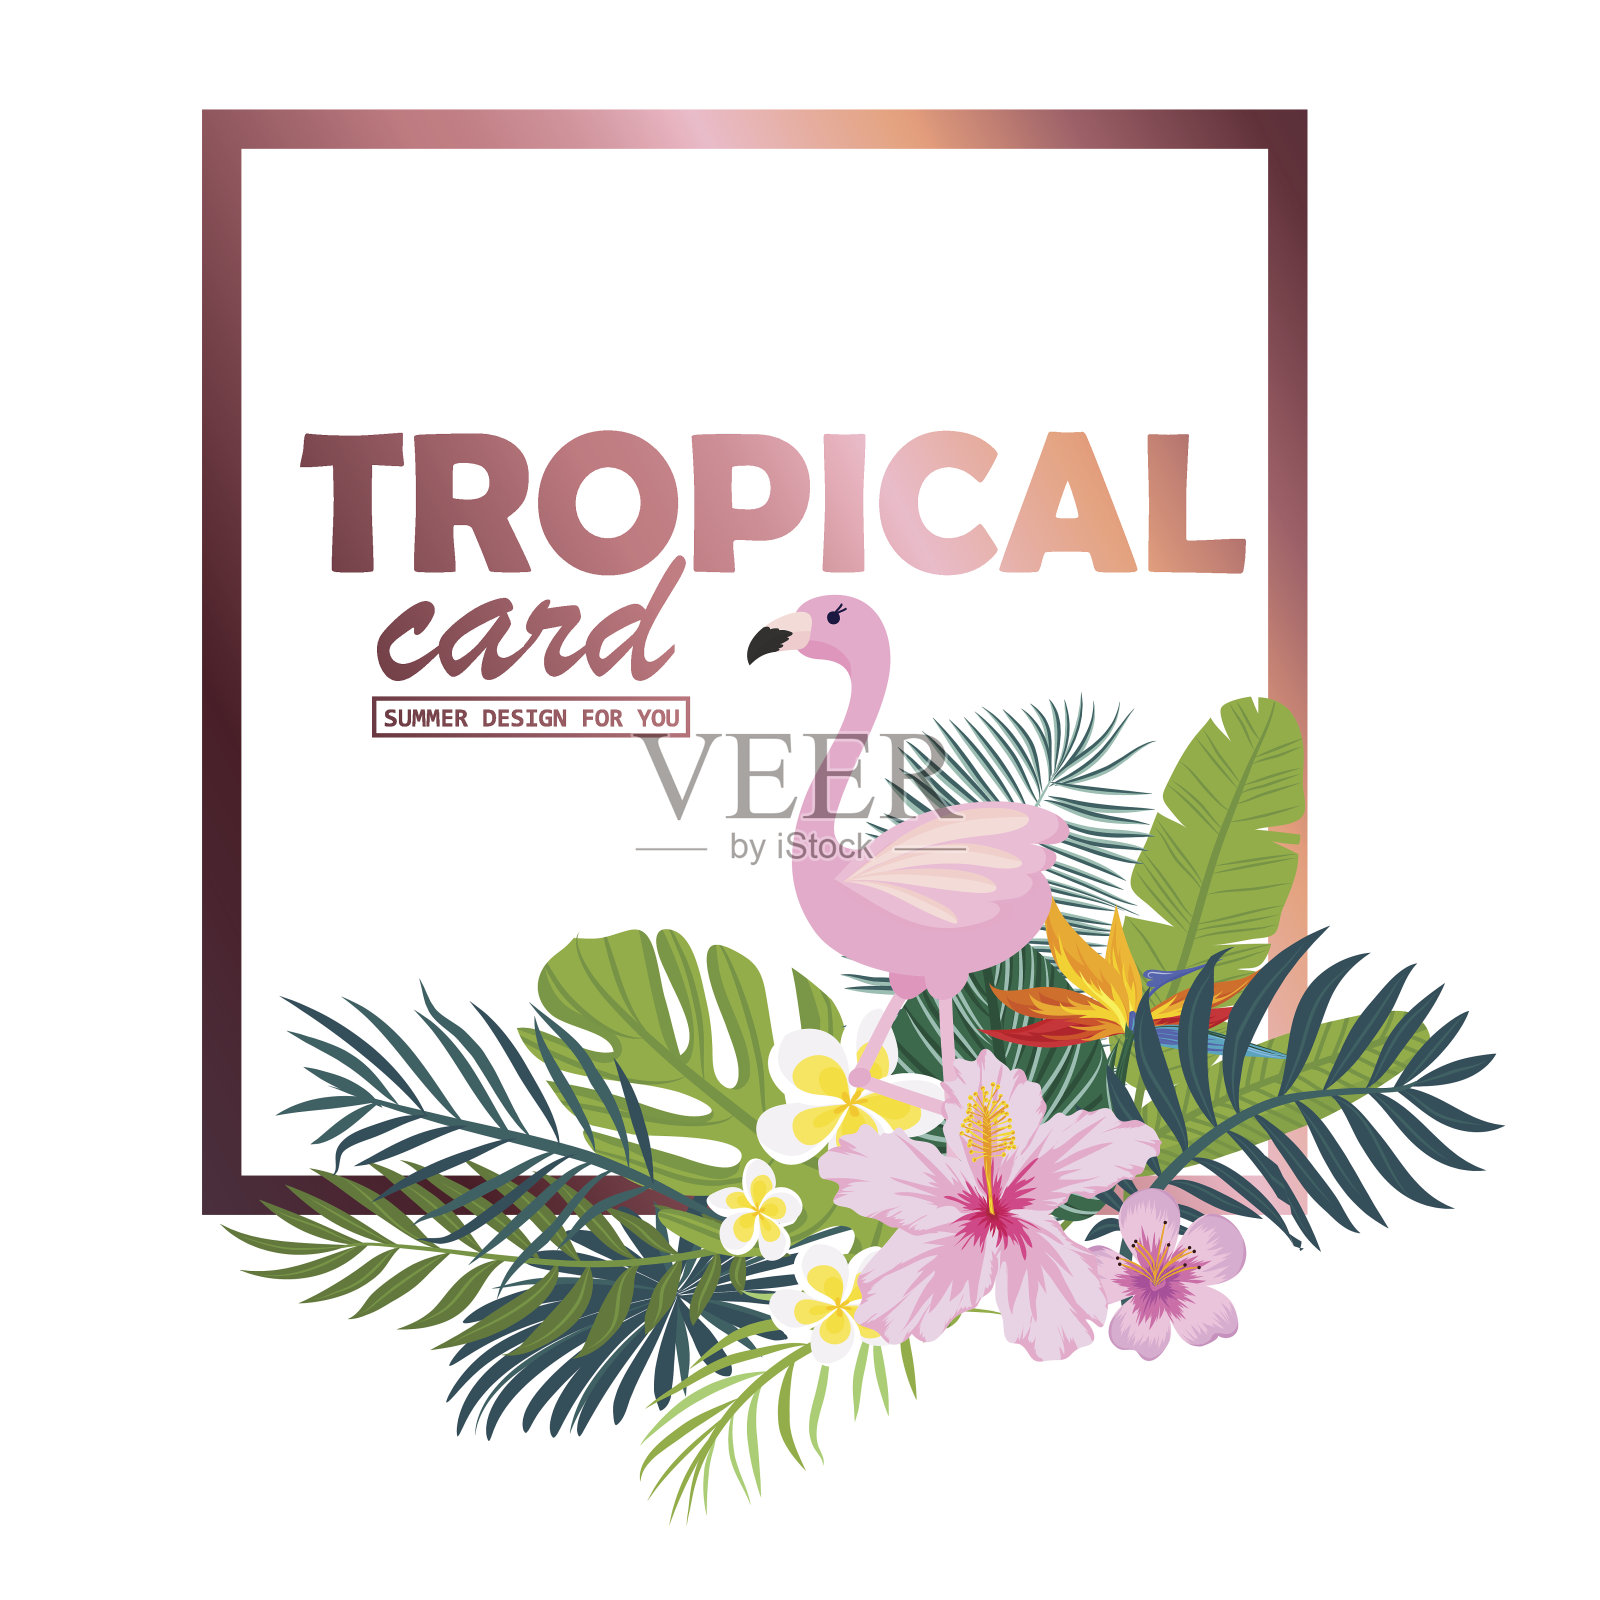 一张印有棕榈叶、火烈鸟和奇异花朵的热带卡片。向量插画图片素材